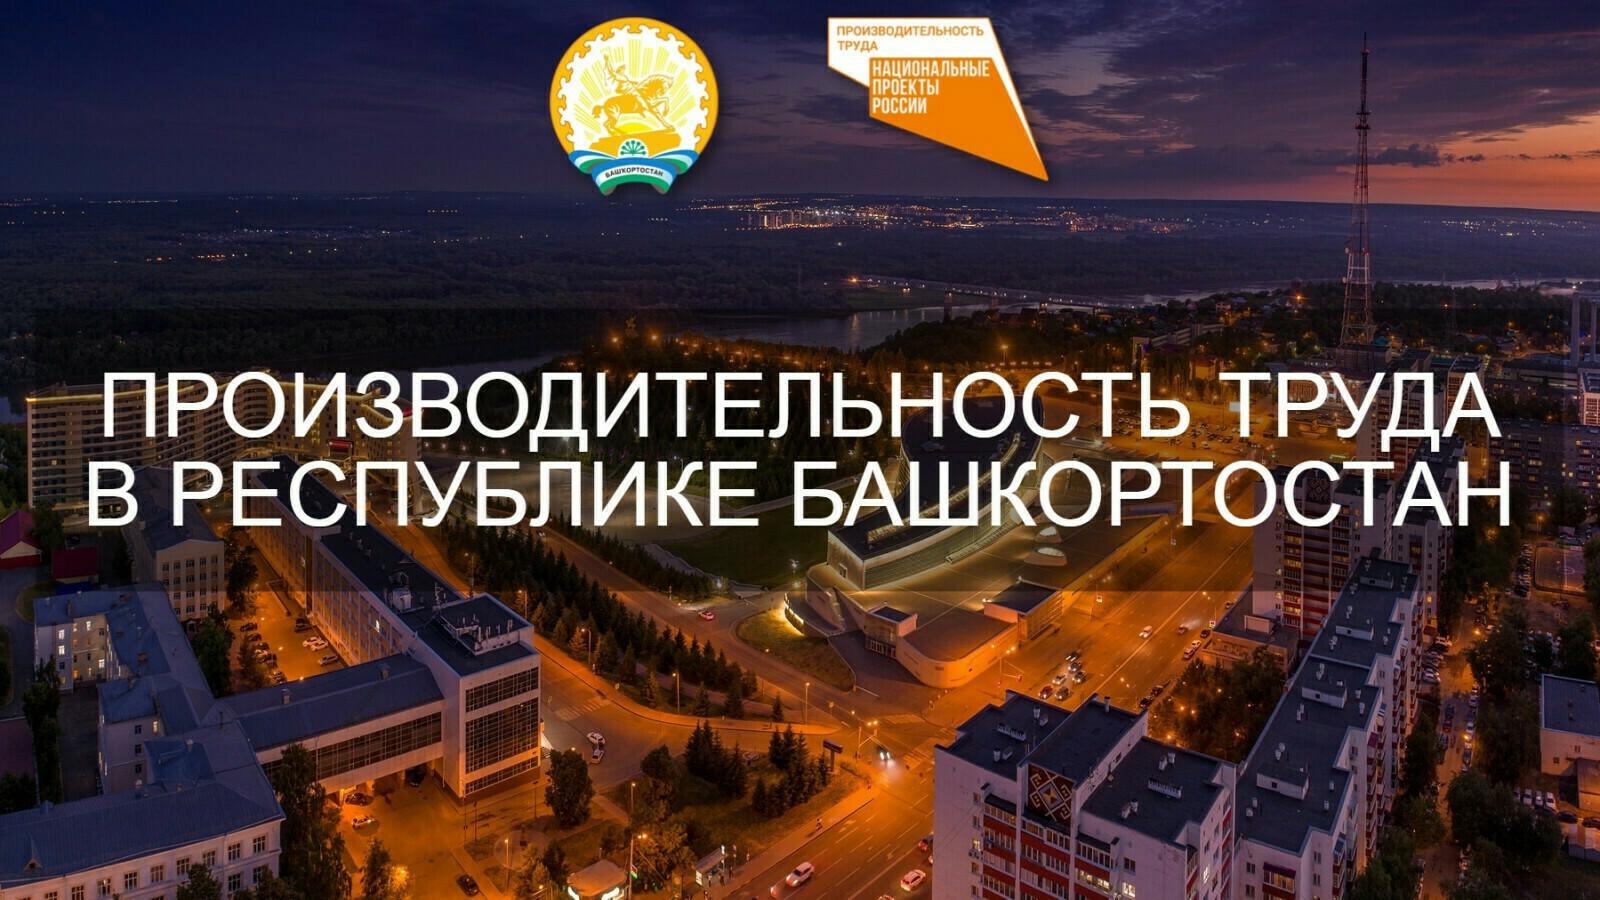 Новые компании пополнили список участников нацпроекта «Производительность труда» в Башкортостане